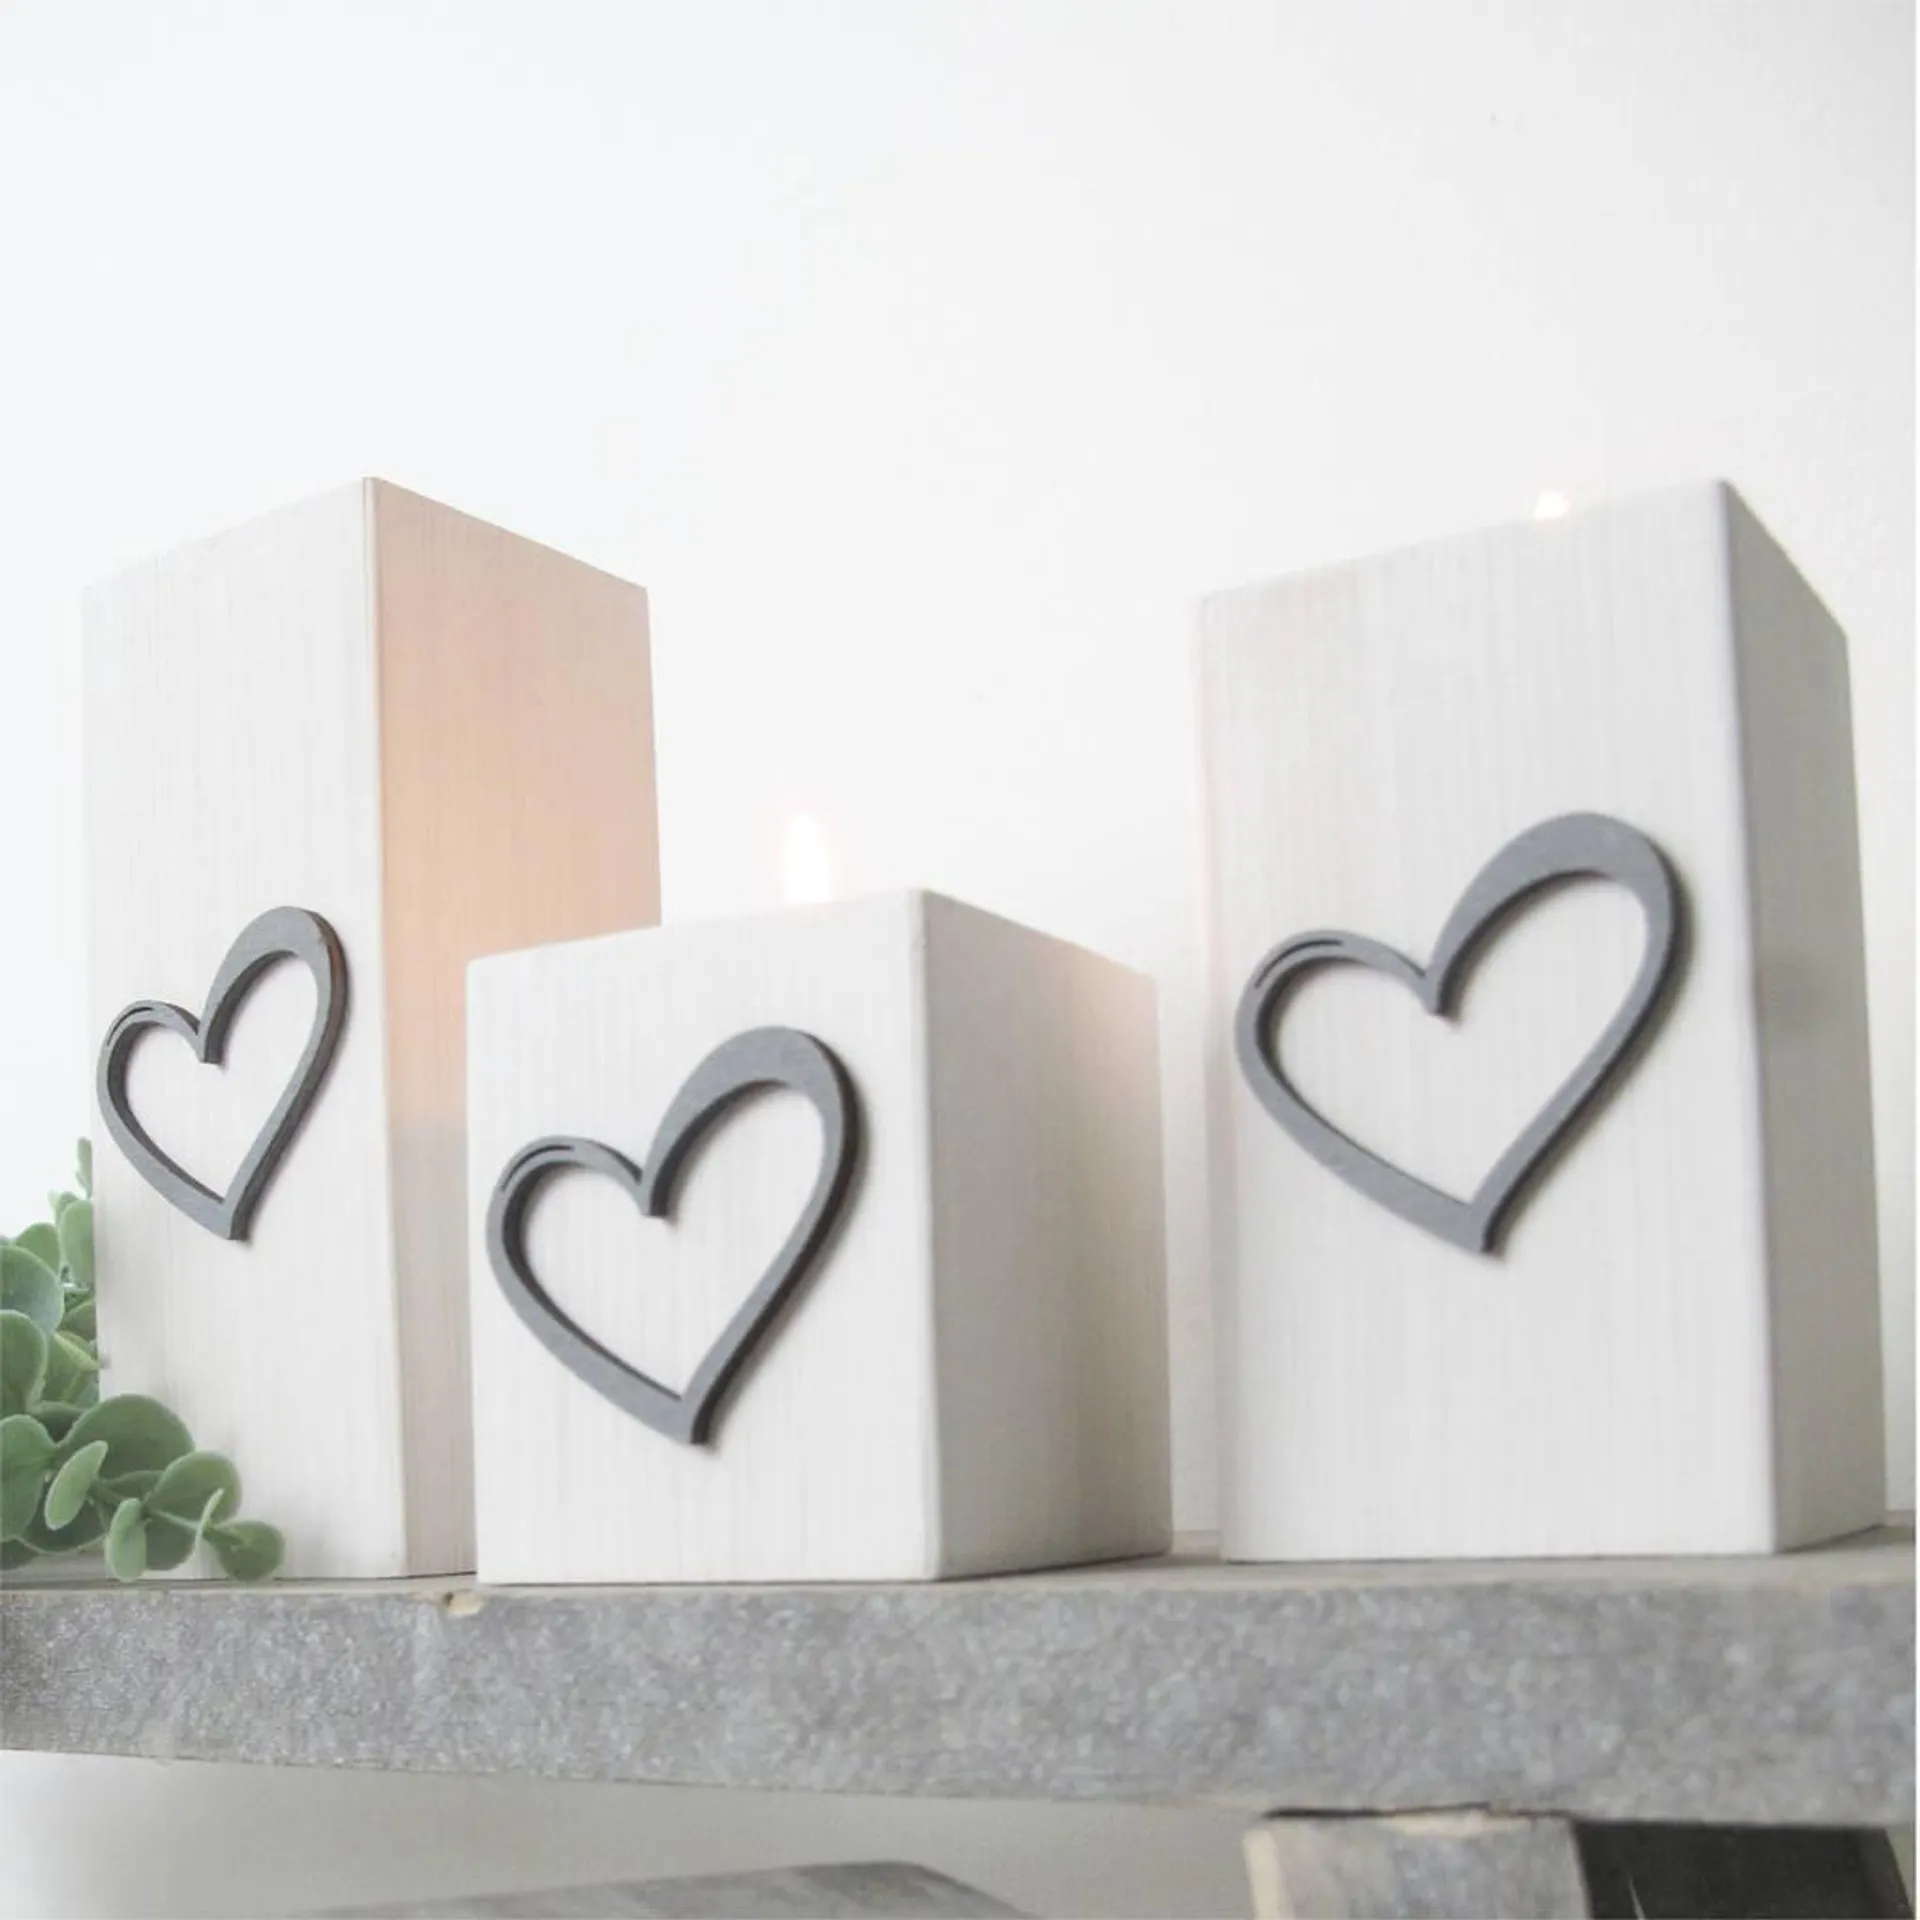 Winter White Wooden Tea Light Holders Grey Heart Design